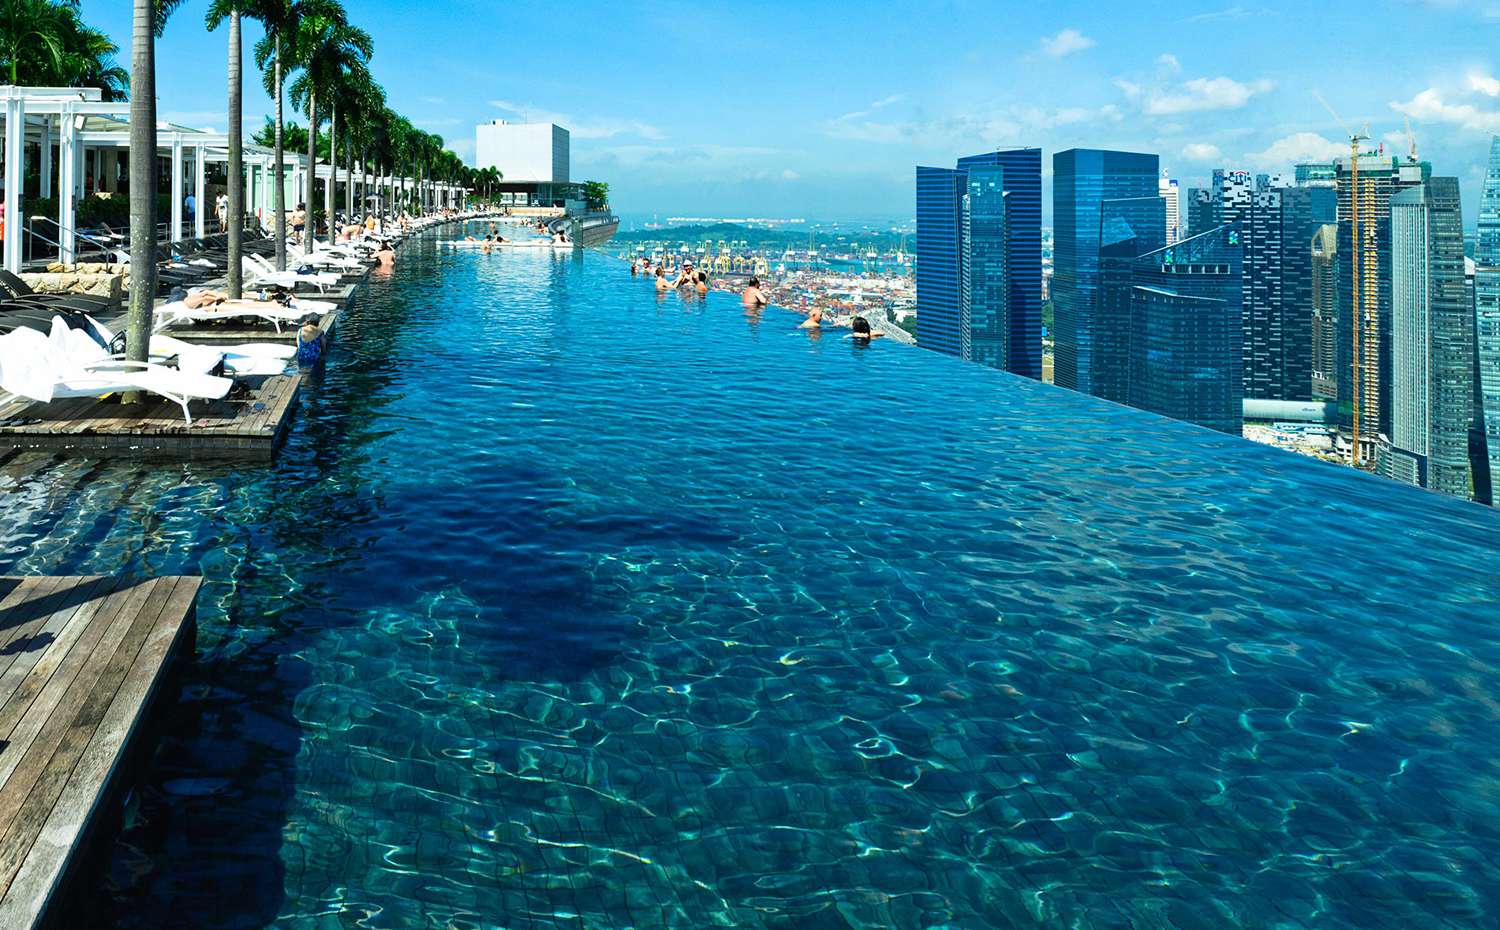 Infinity Pool at Marina Bay Sands Hotel